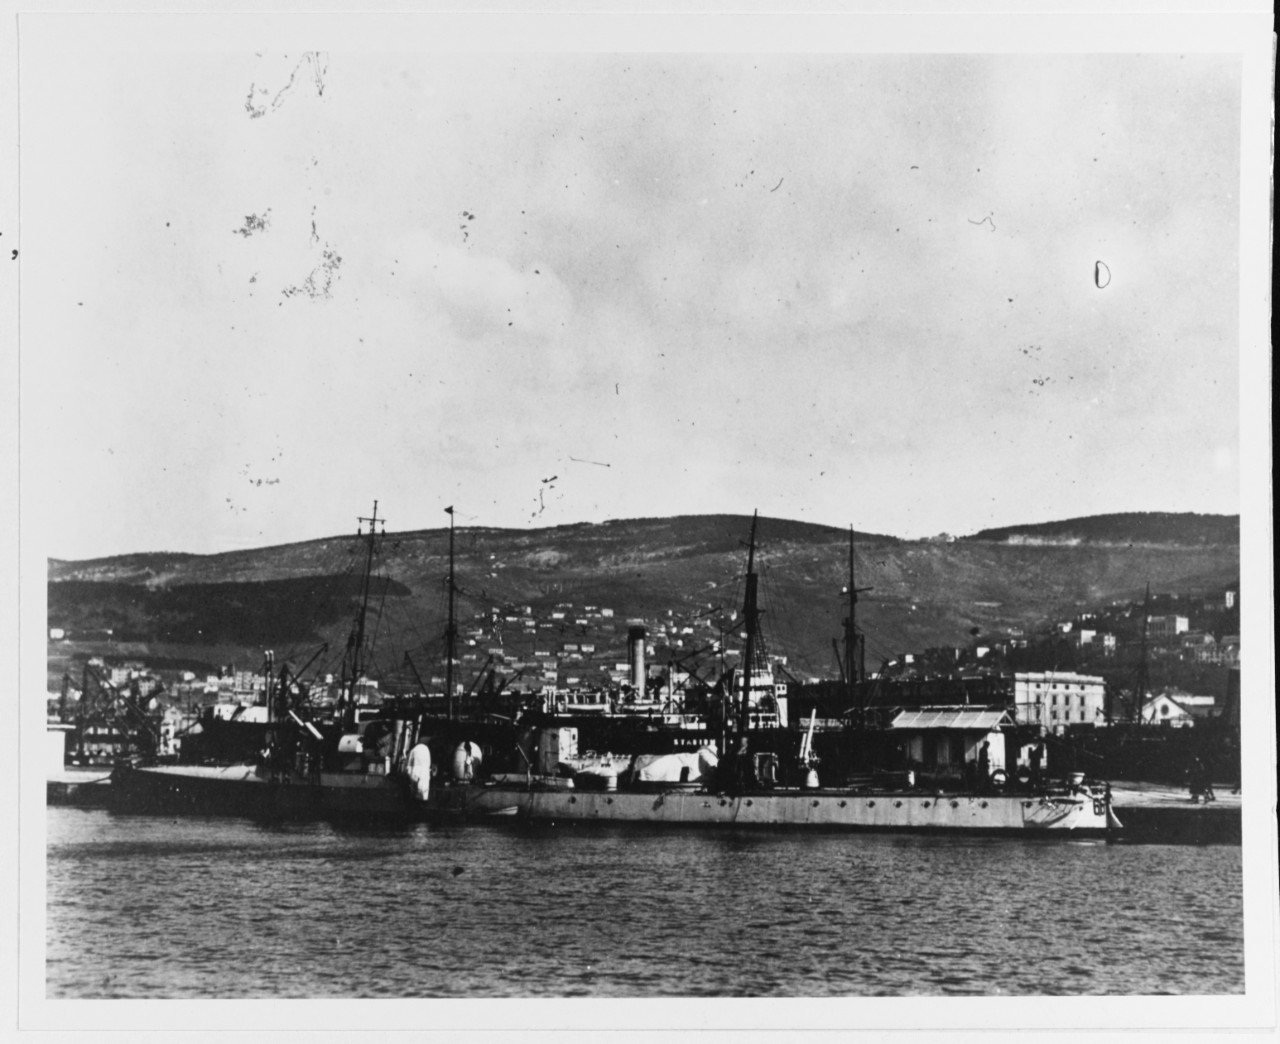 66 PN (Italian torpedo boat, 1918-1932)